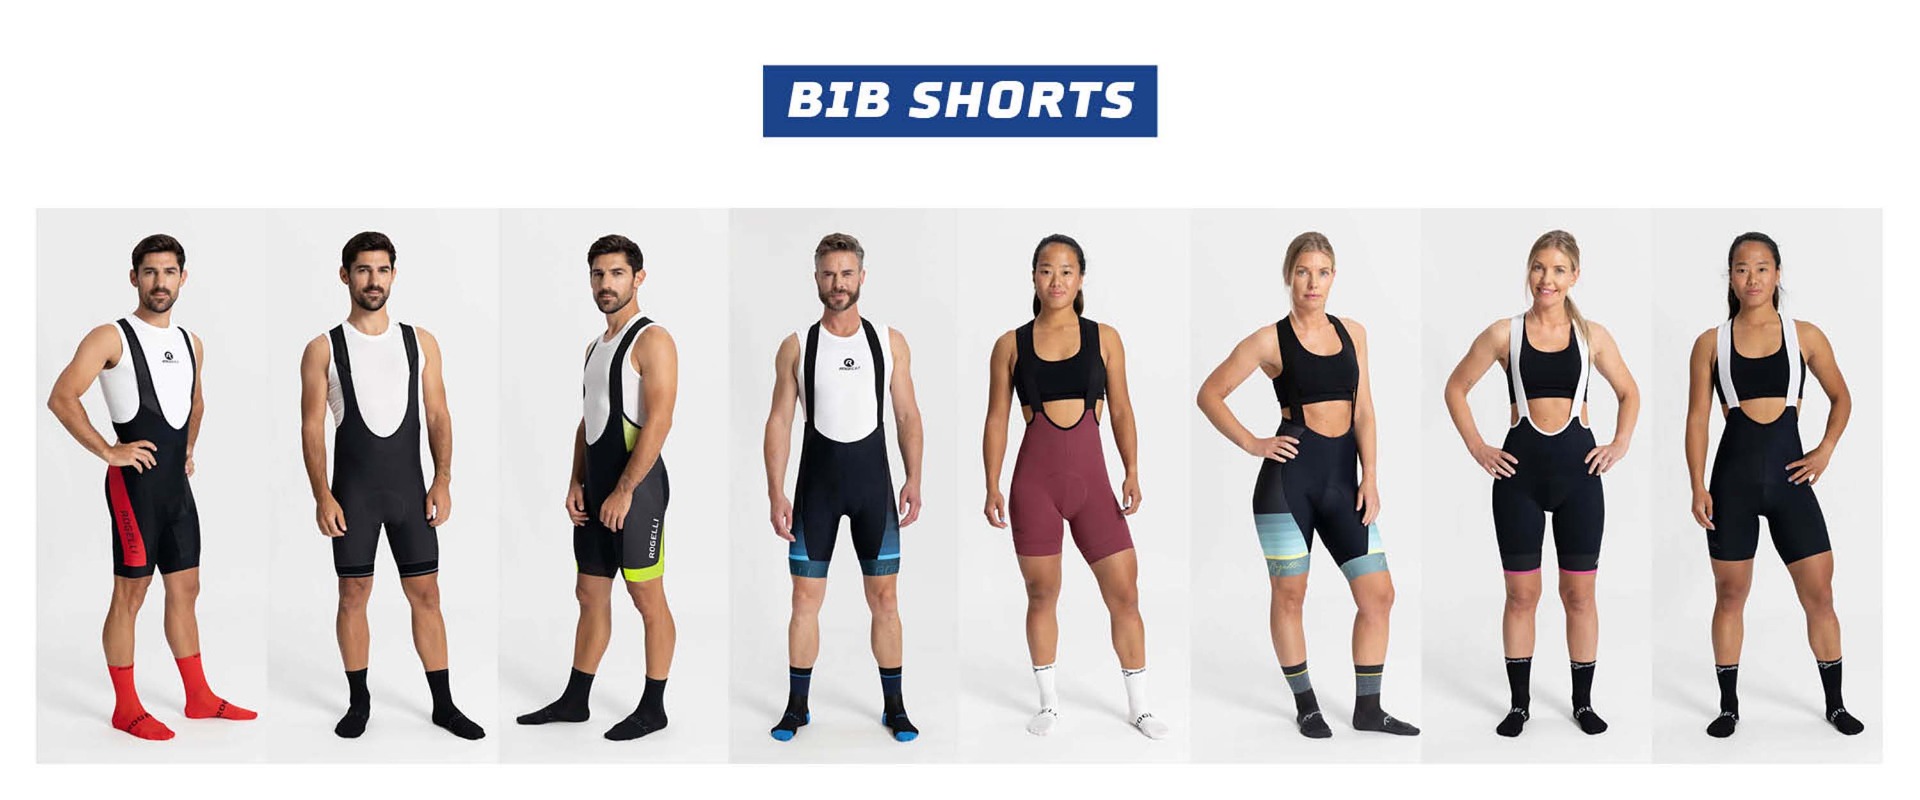 8 foto's van modellen poserend voor een grijze achtergrond met verschillende bib shorts van Rogelli aan, mannen en vrouwen